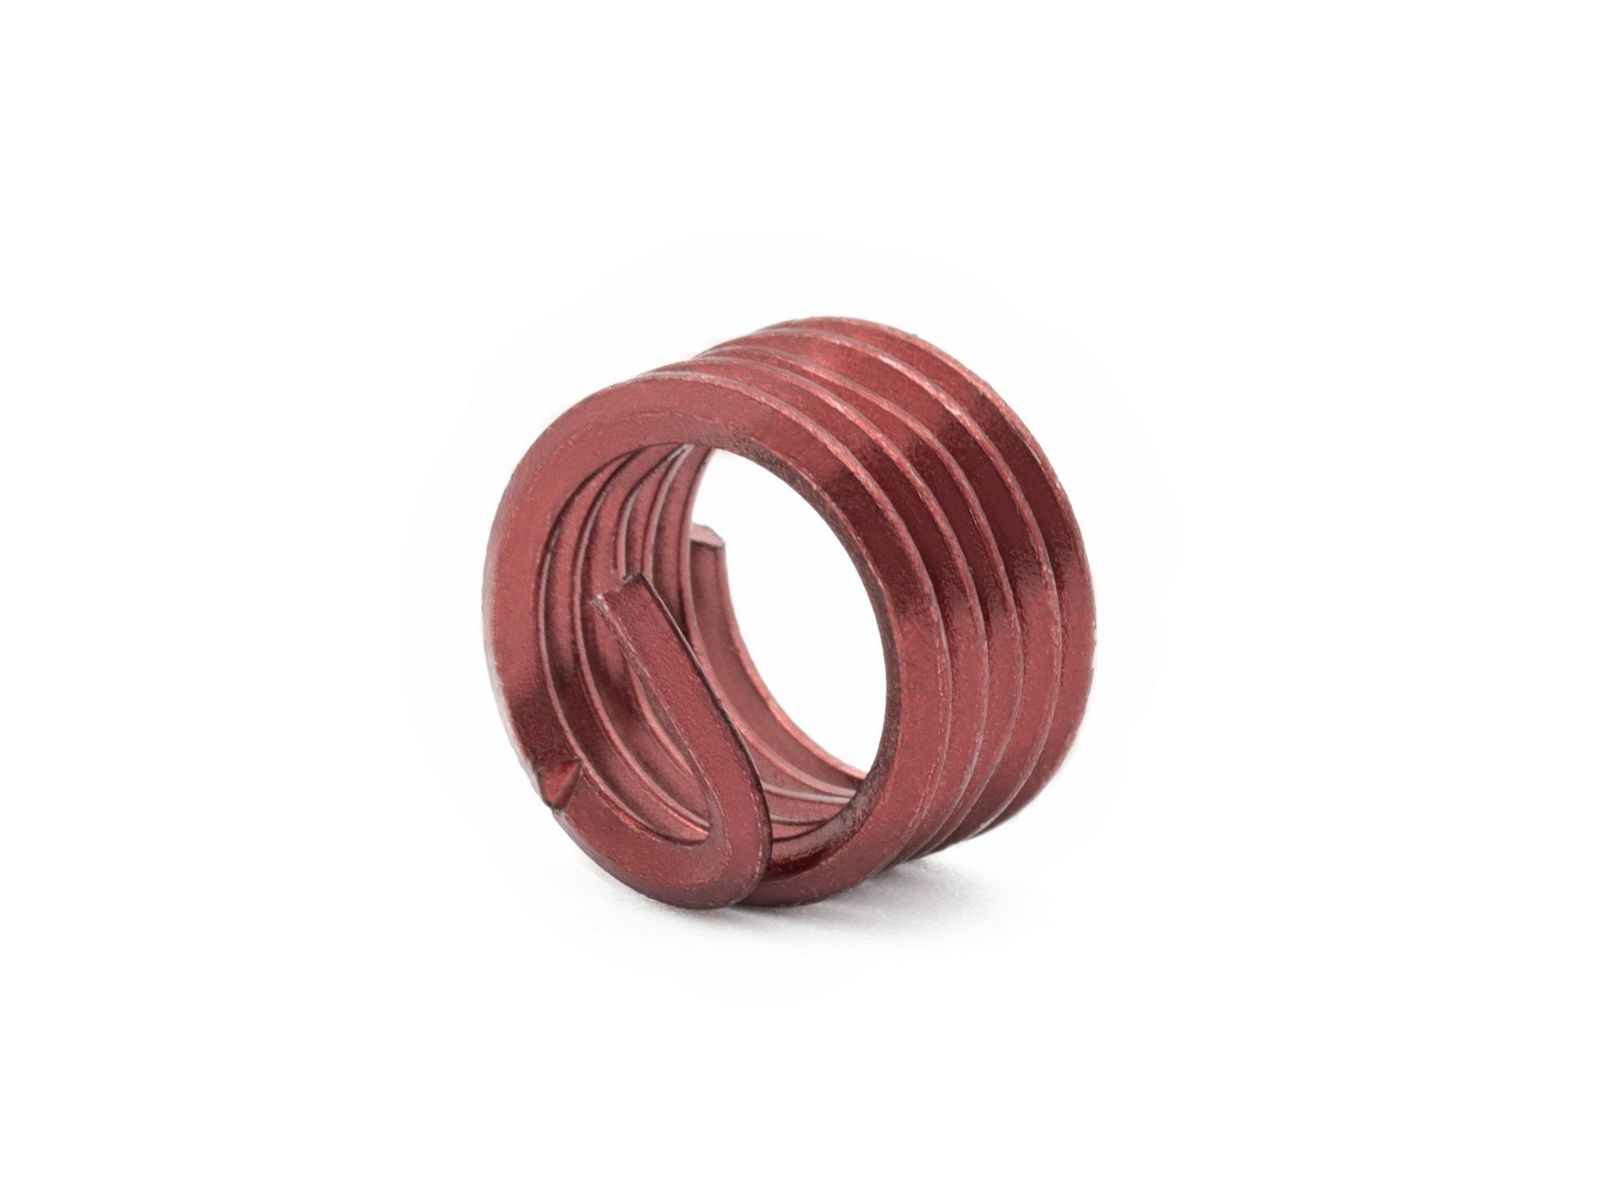 BaerCoil Wire Thread Inserts M 7 x 1.0 - 1.0 D (7 mm) - screw grip (screw locking) - 100 pcs.